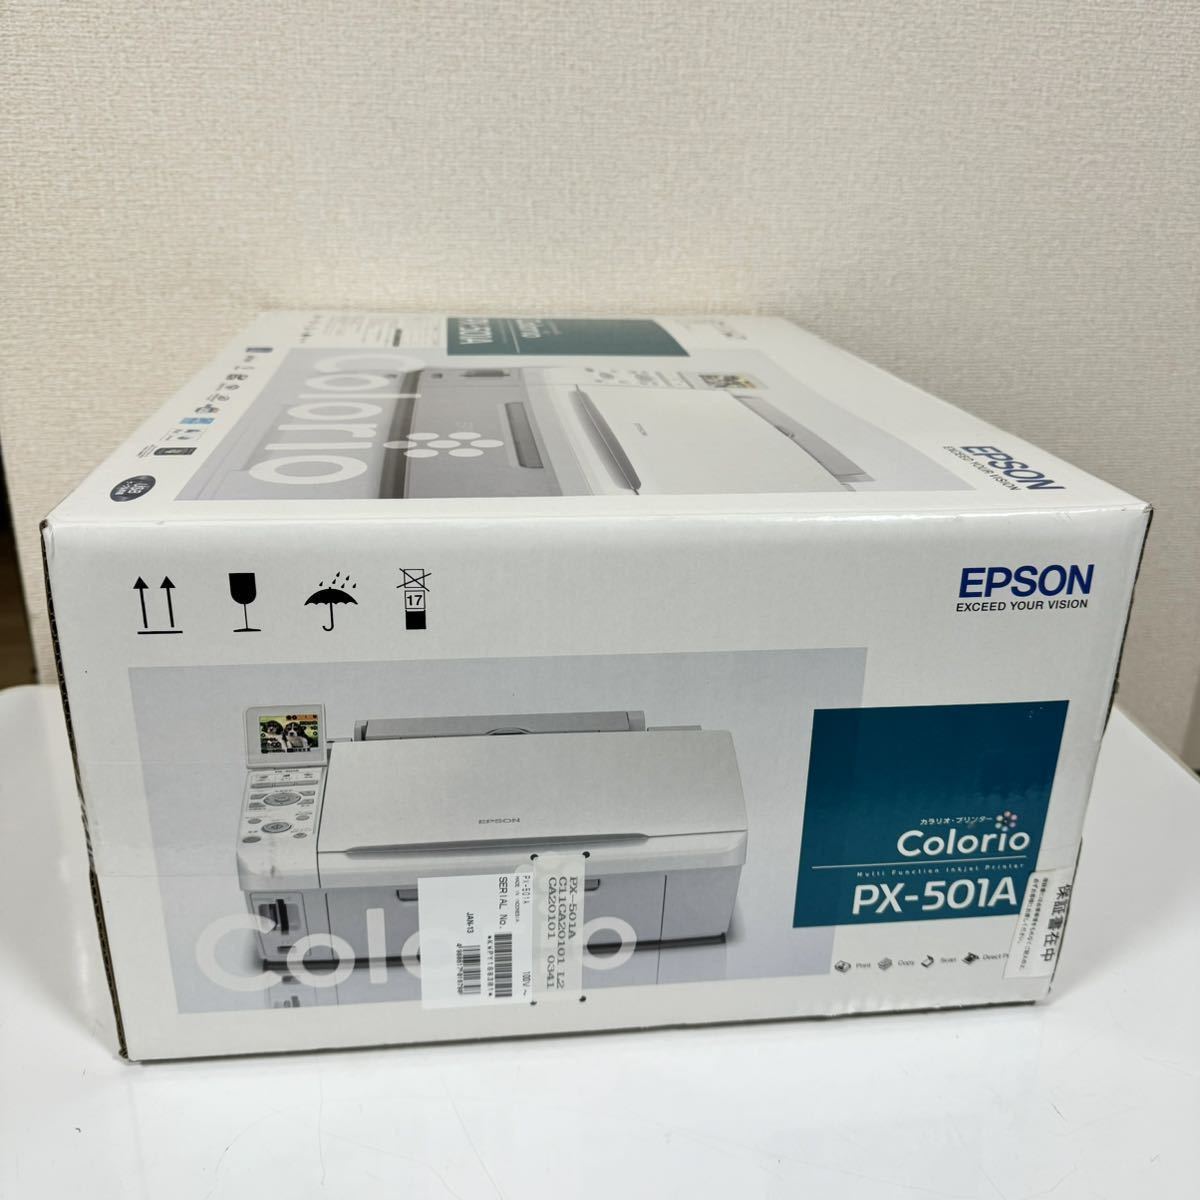 【 新品 /未開封品 】EPSON Colorio PX-501A エプソン カラリオ プリンター 複合機 インクジェットプリンター